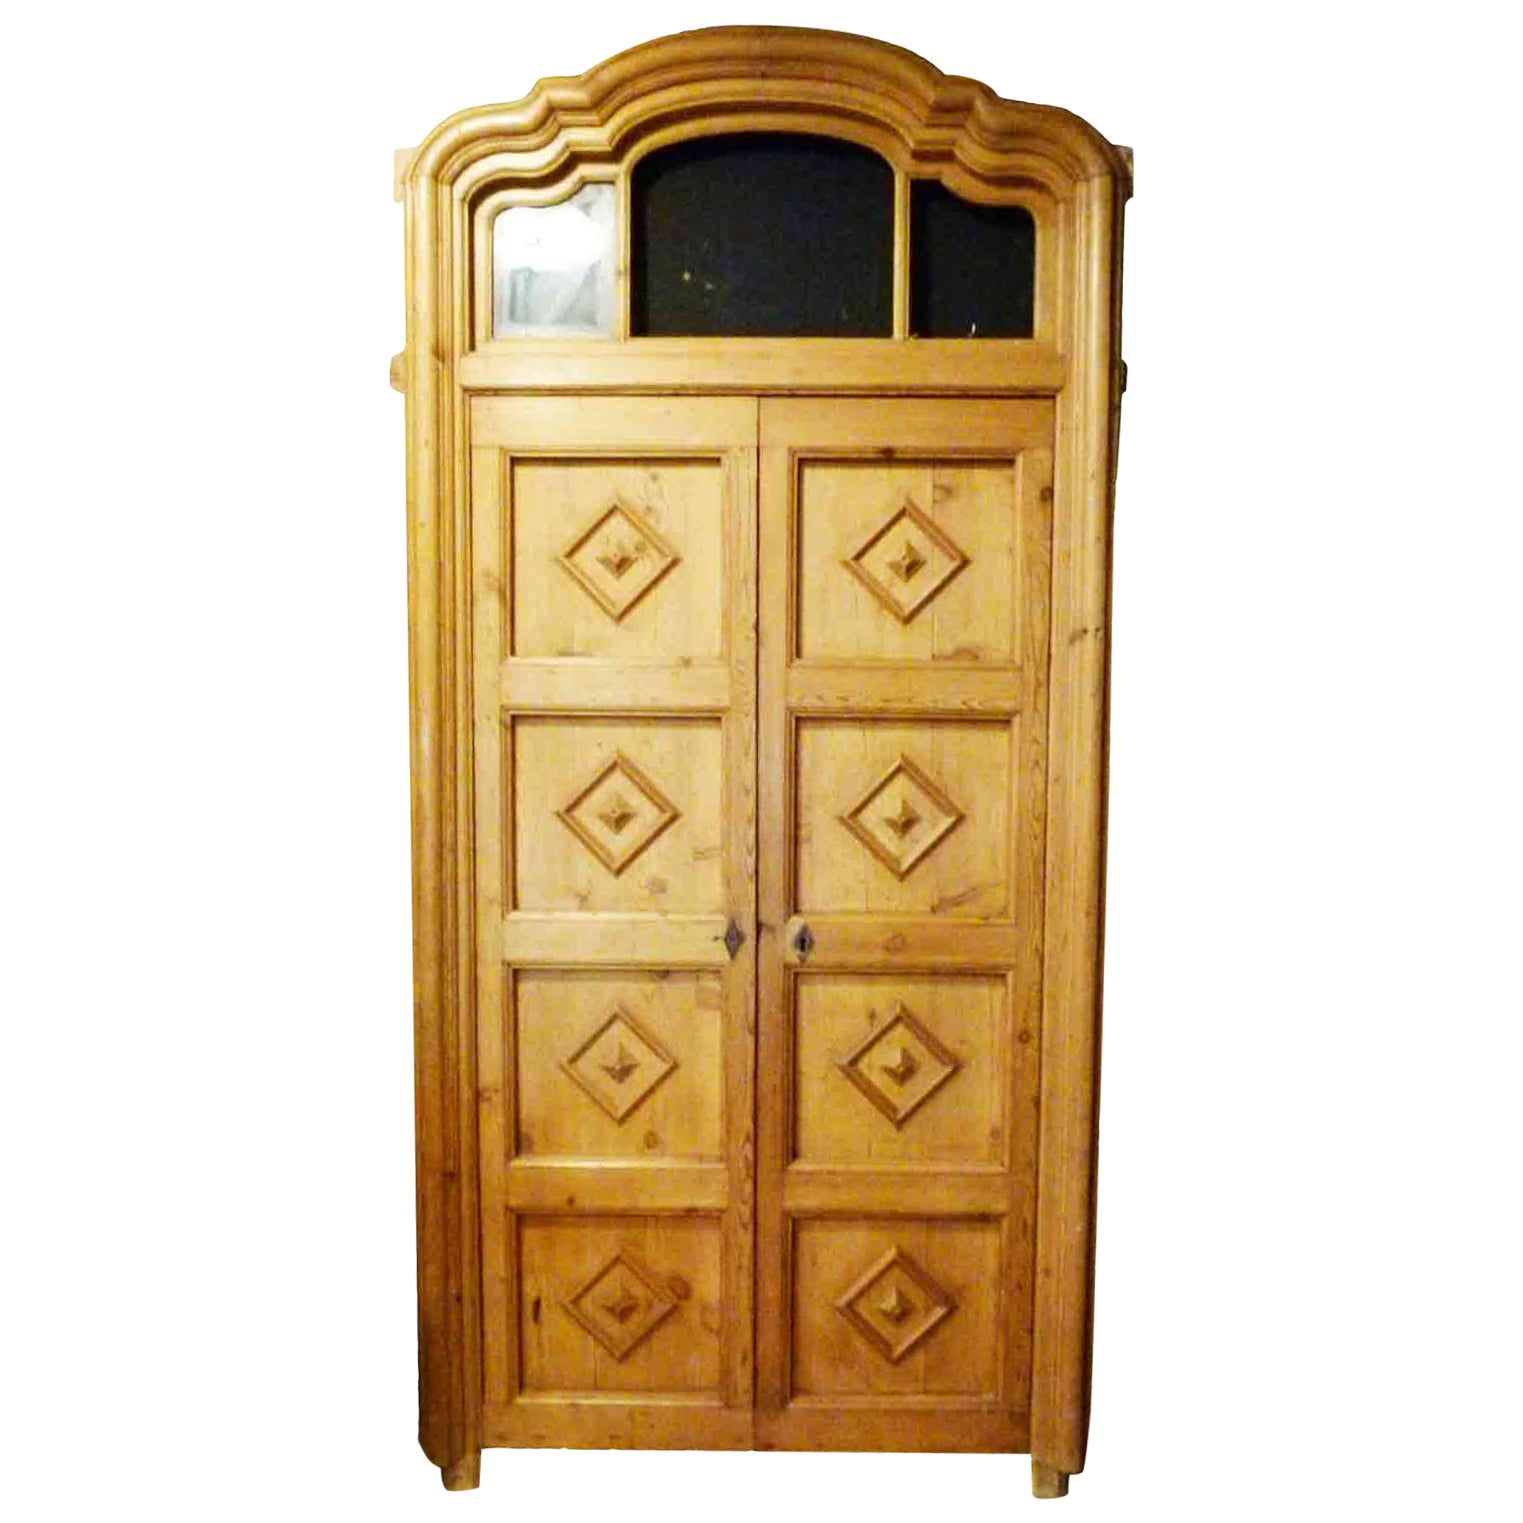 Antique Wooden Double Front Door For Sale